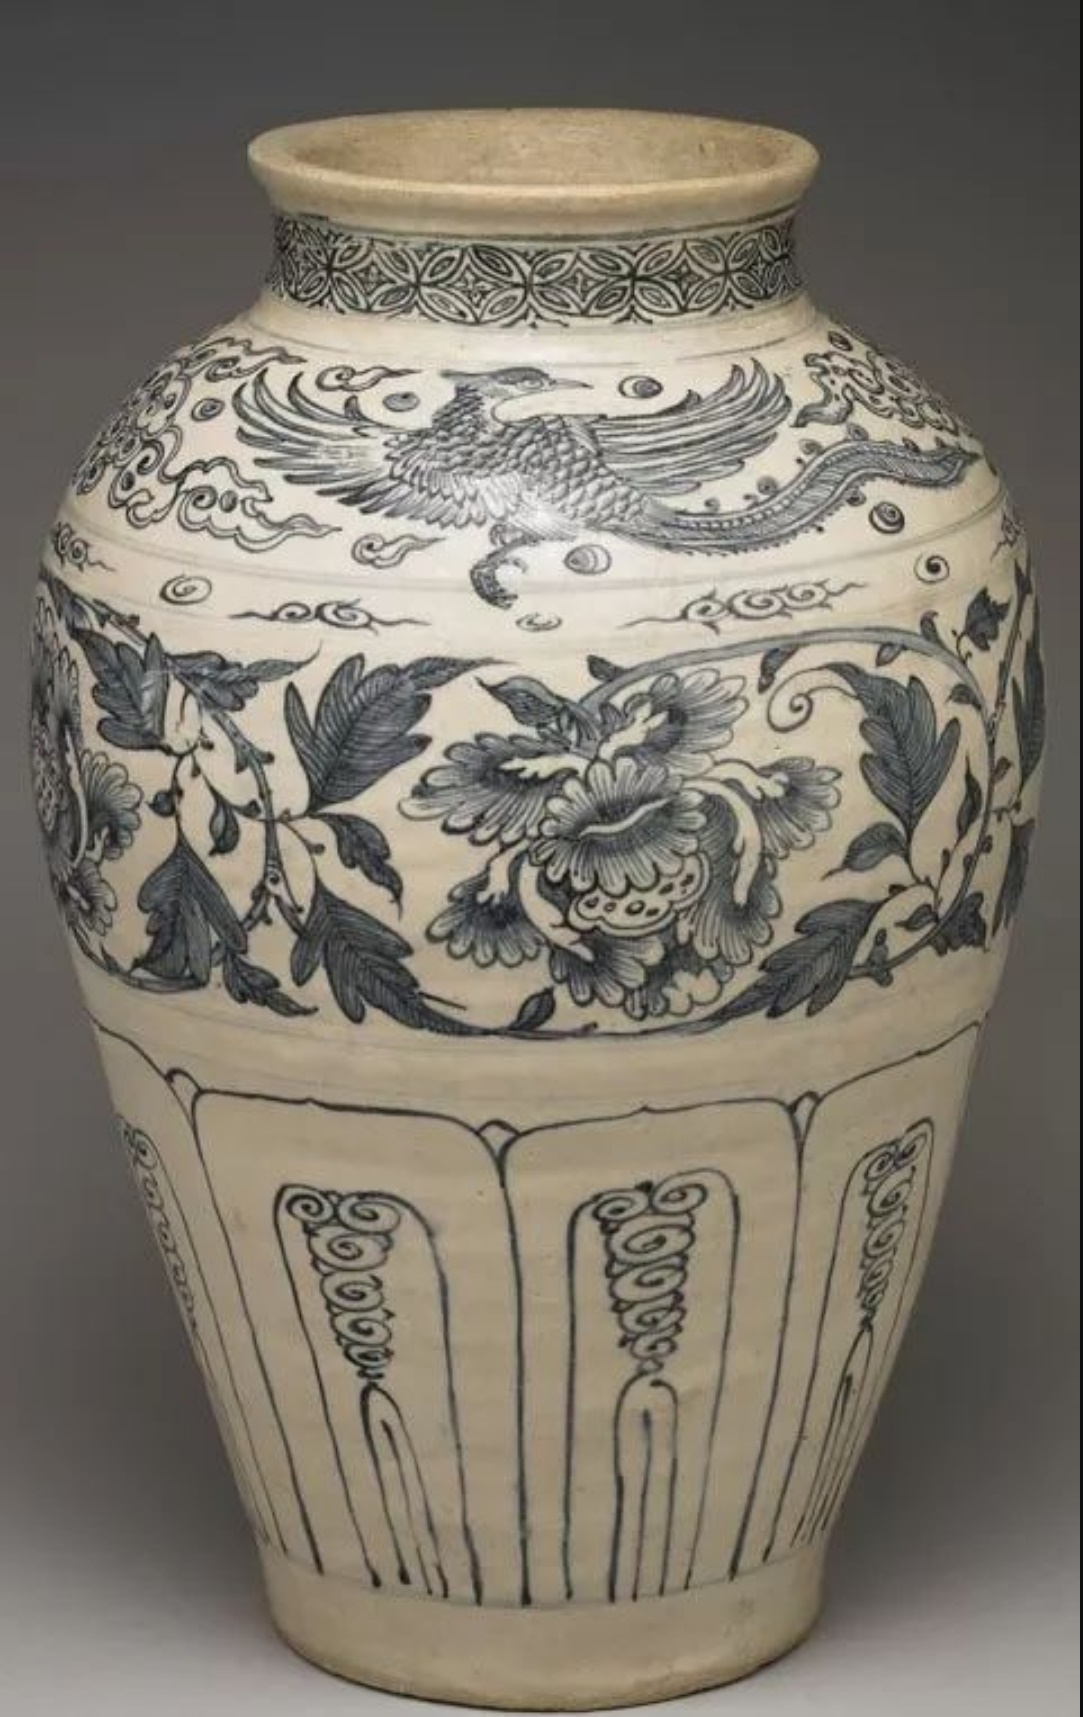 越南青花鳳凰牡丹瓶 十五世紀末十六世紀初 高40.8公分，口徑14.8公分